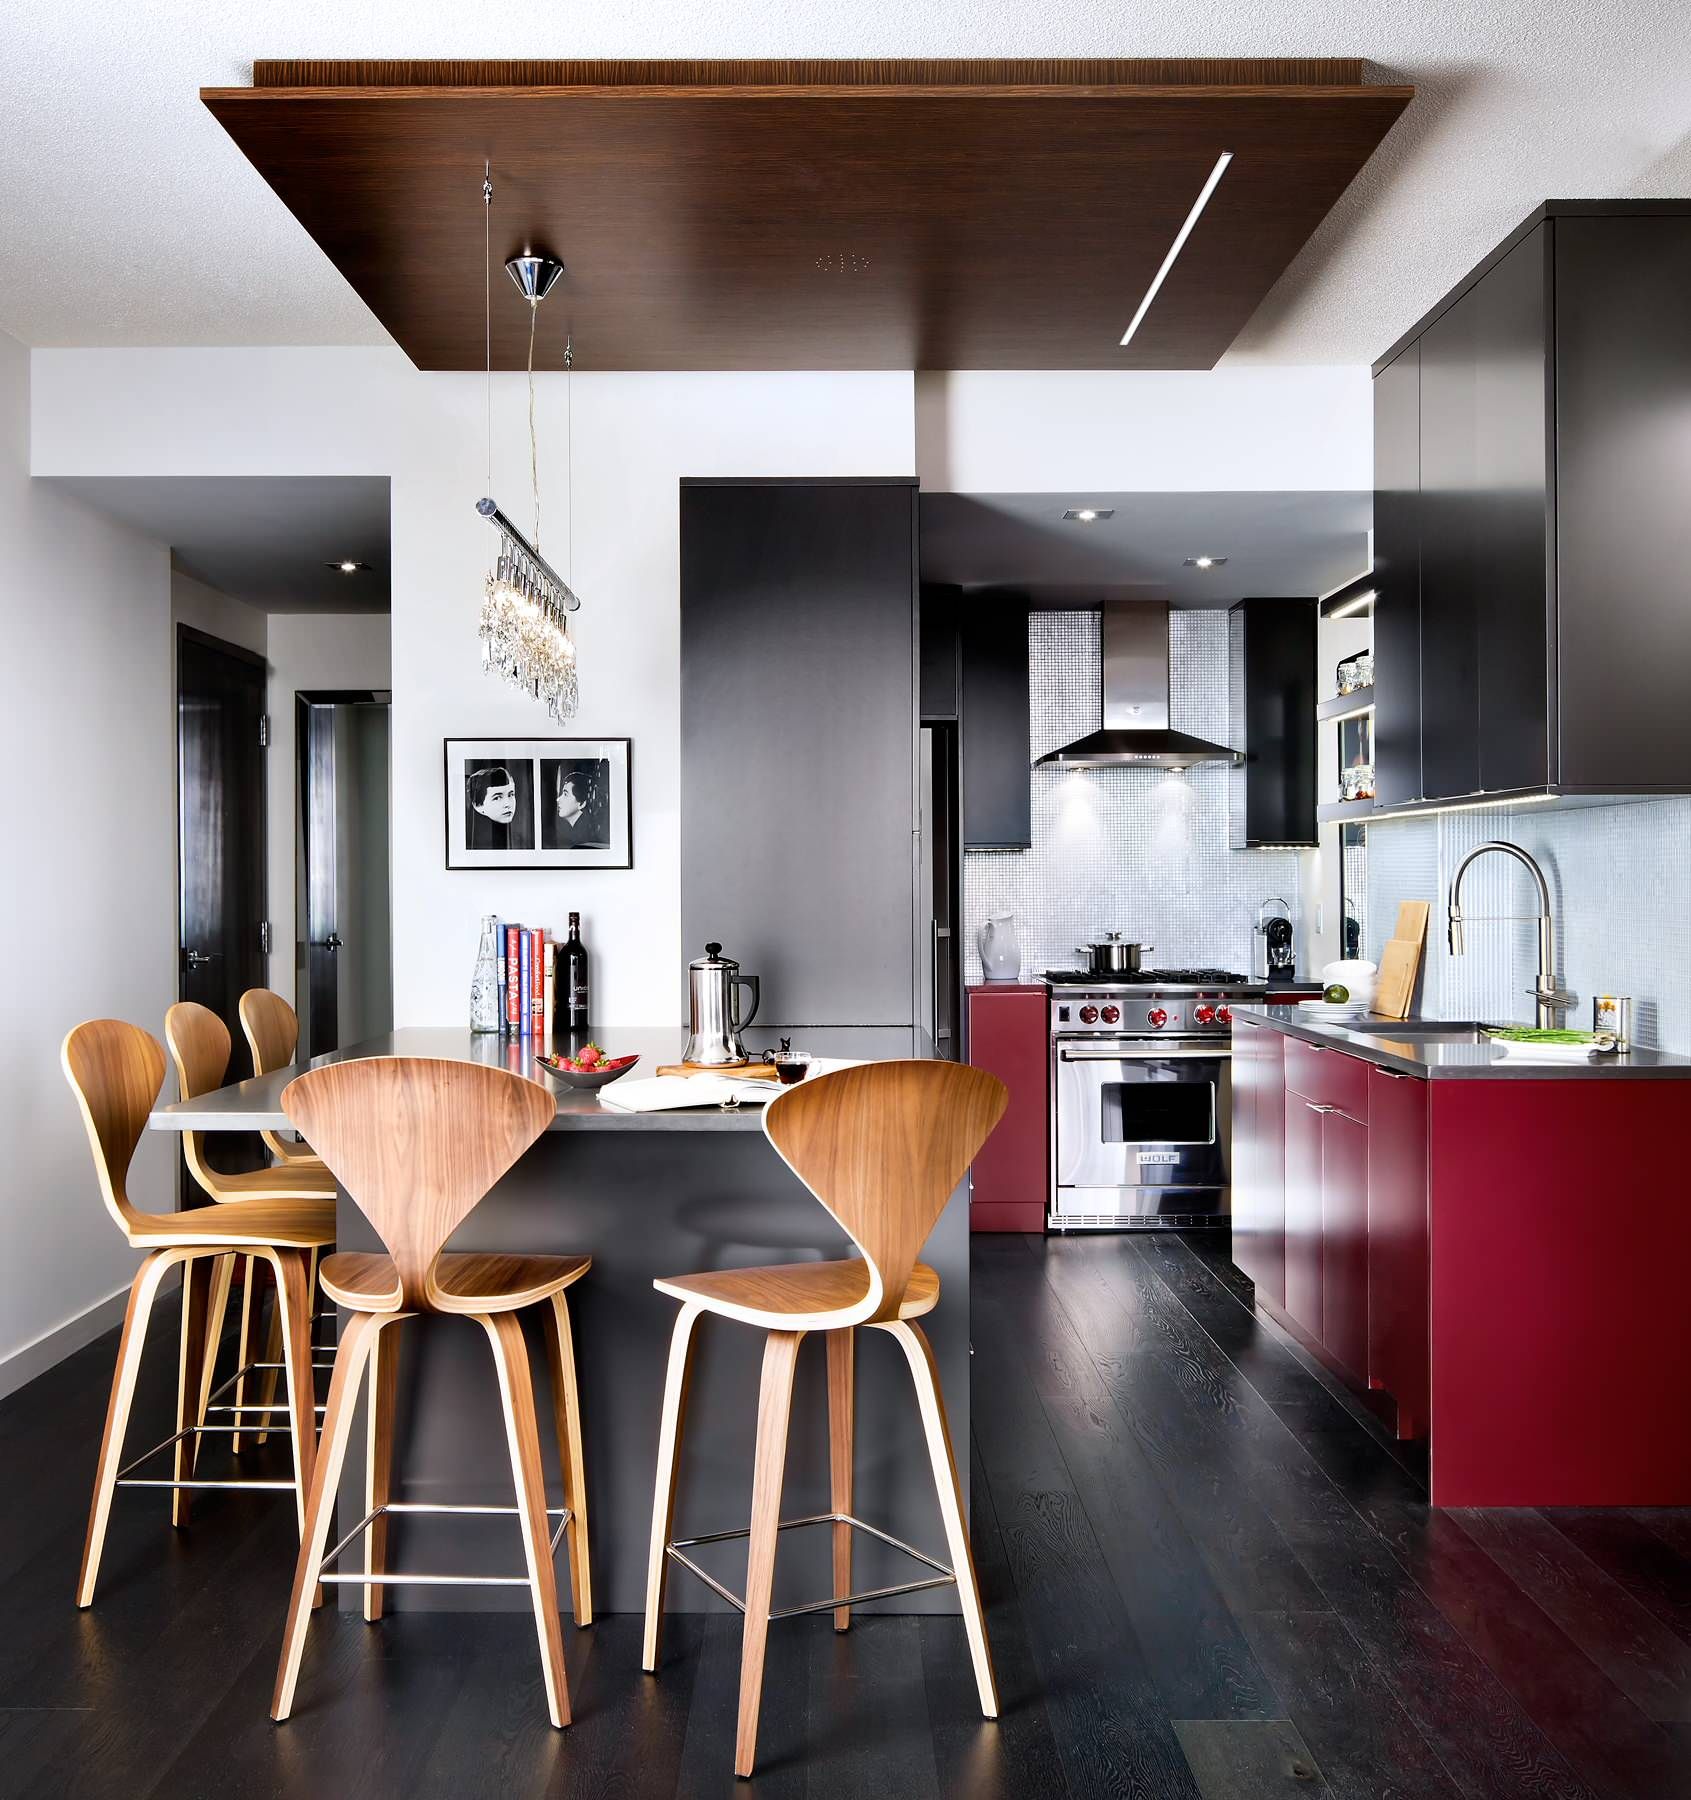 Podovi u kuhinji, što je bolje: crijep, laminat, samonivelirajući pod ili linoleum